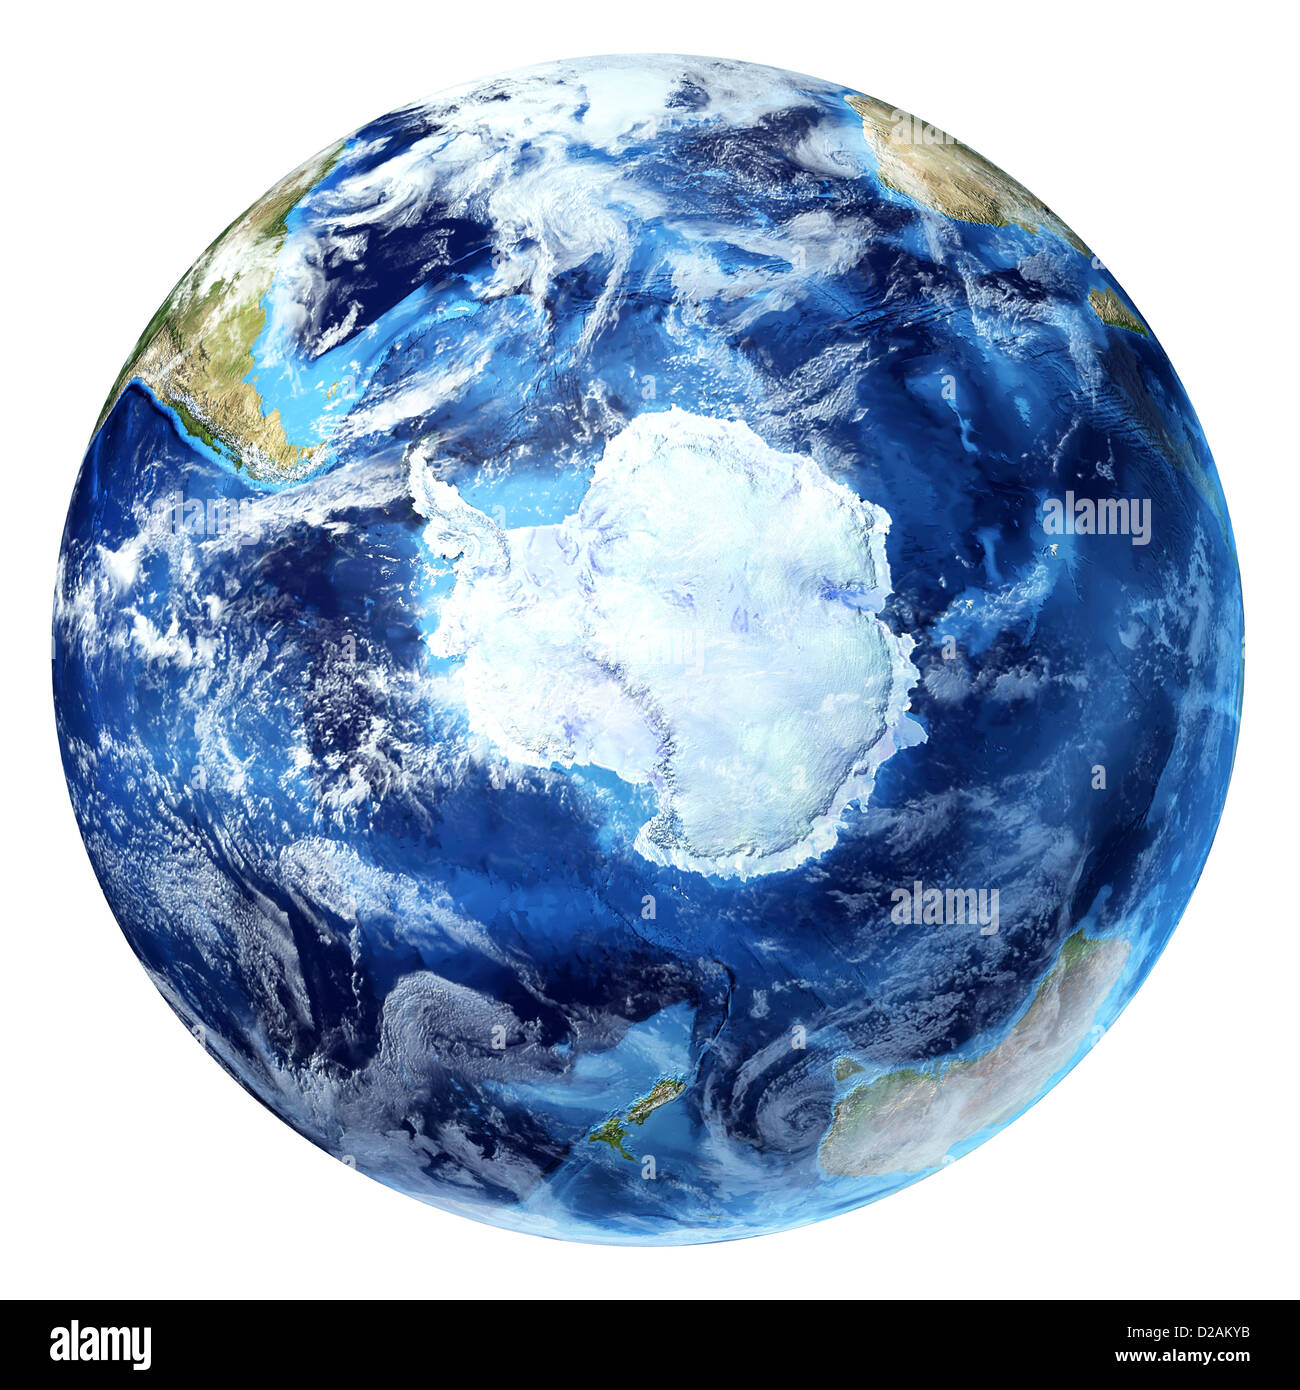 Globe de la terre, réaliste 3 D, avec quelques nuages. Antarctique (pôle sud). Sur fond blanc. Banque D'Images